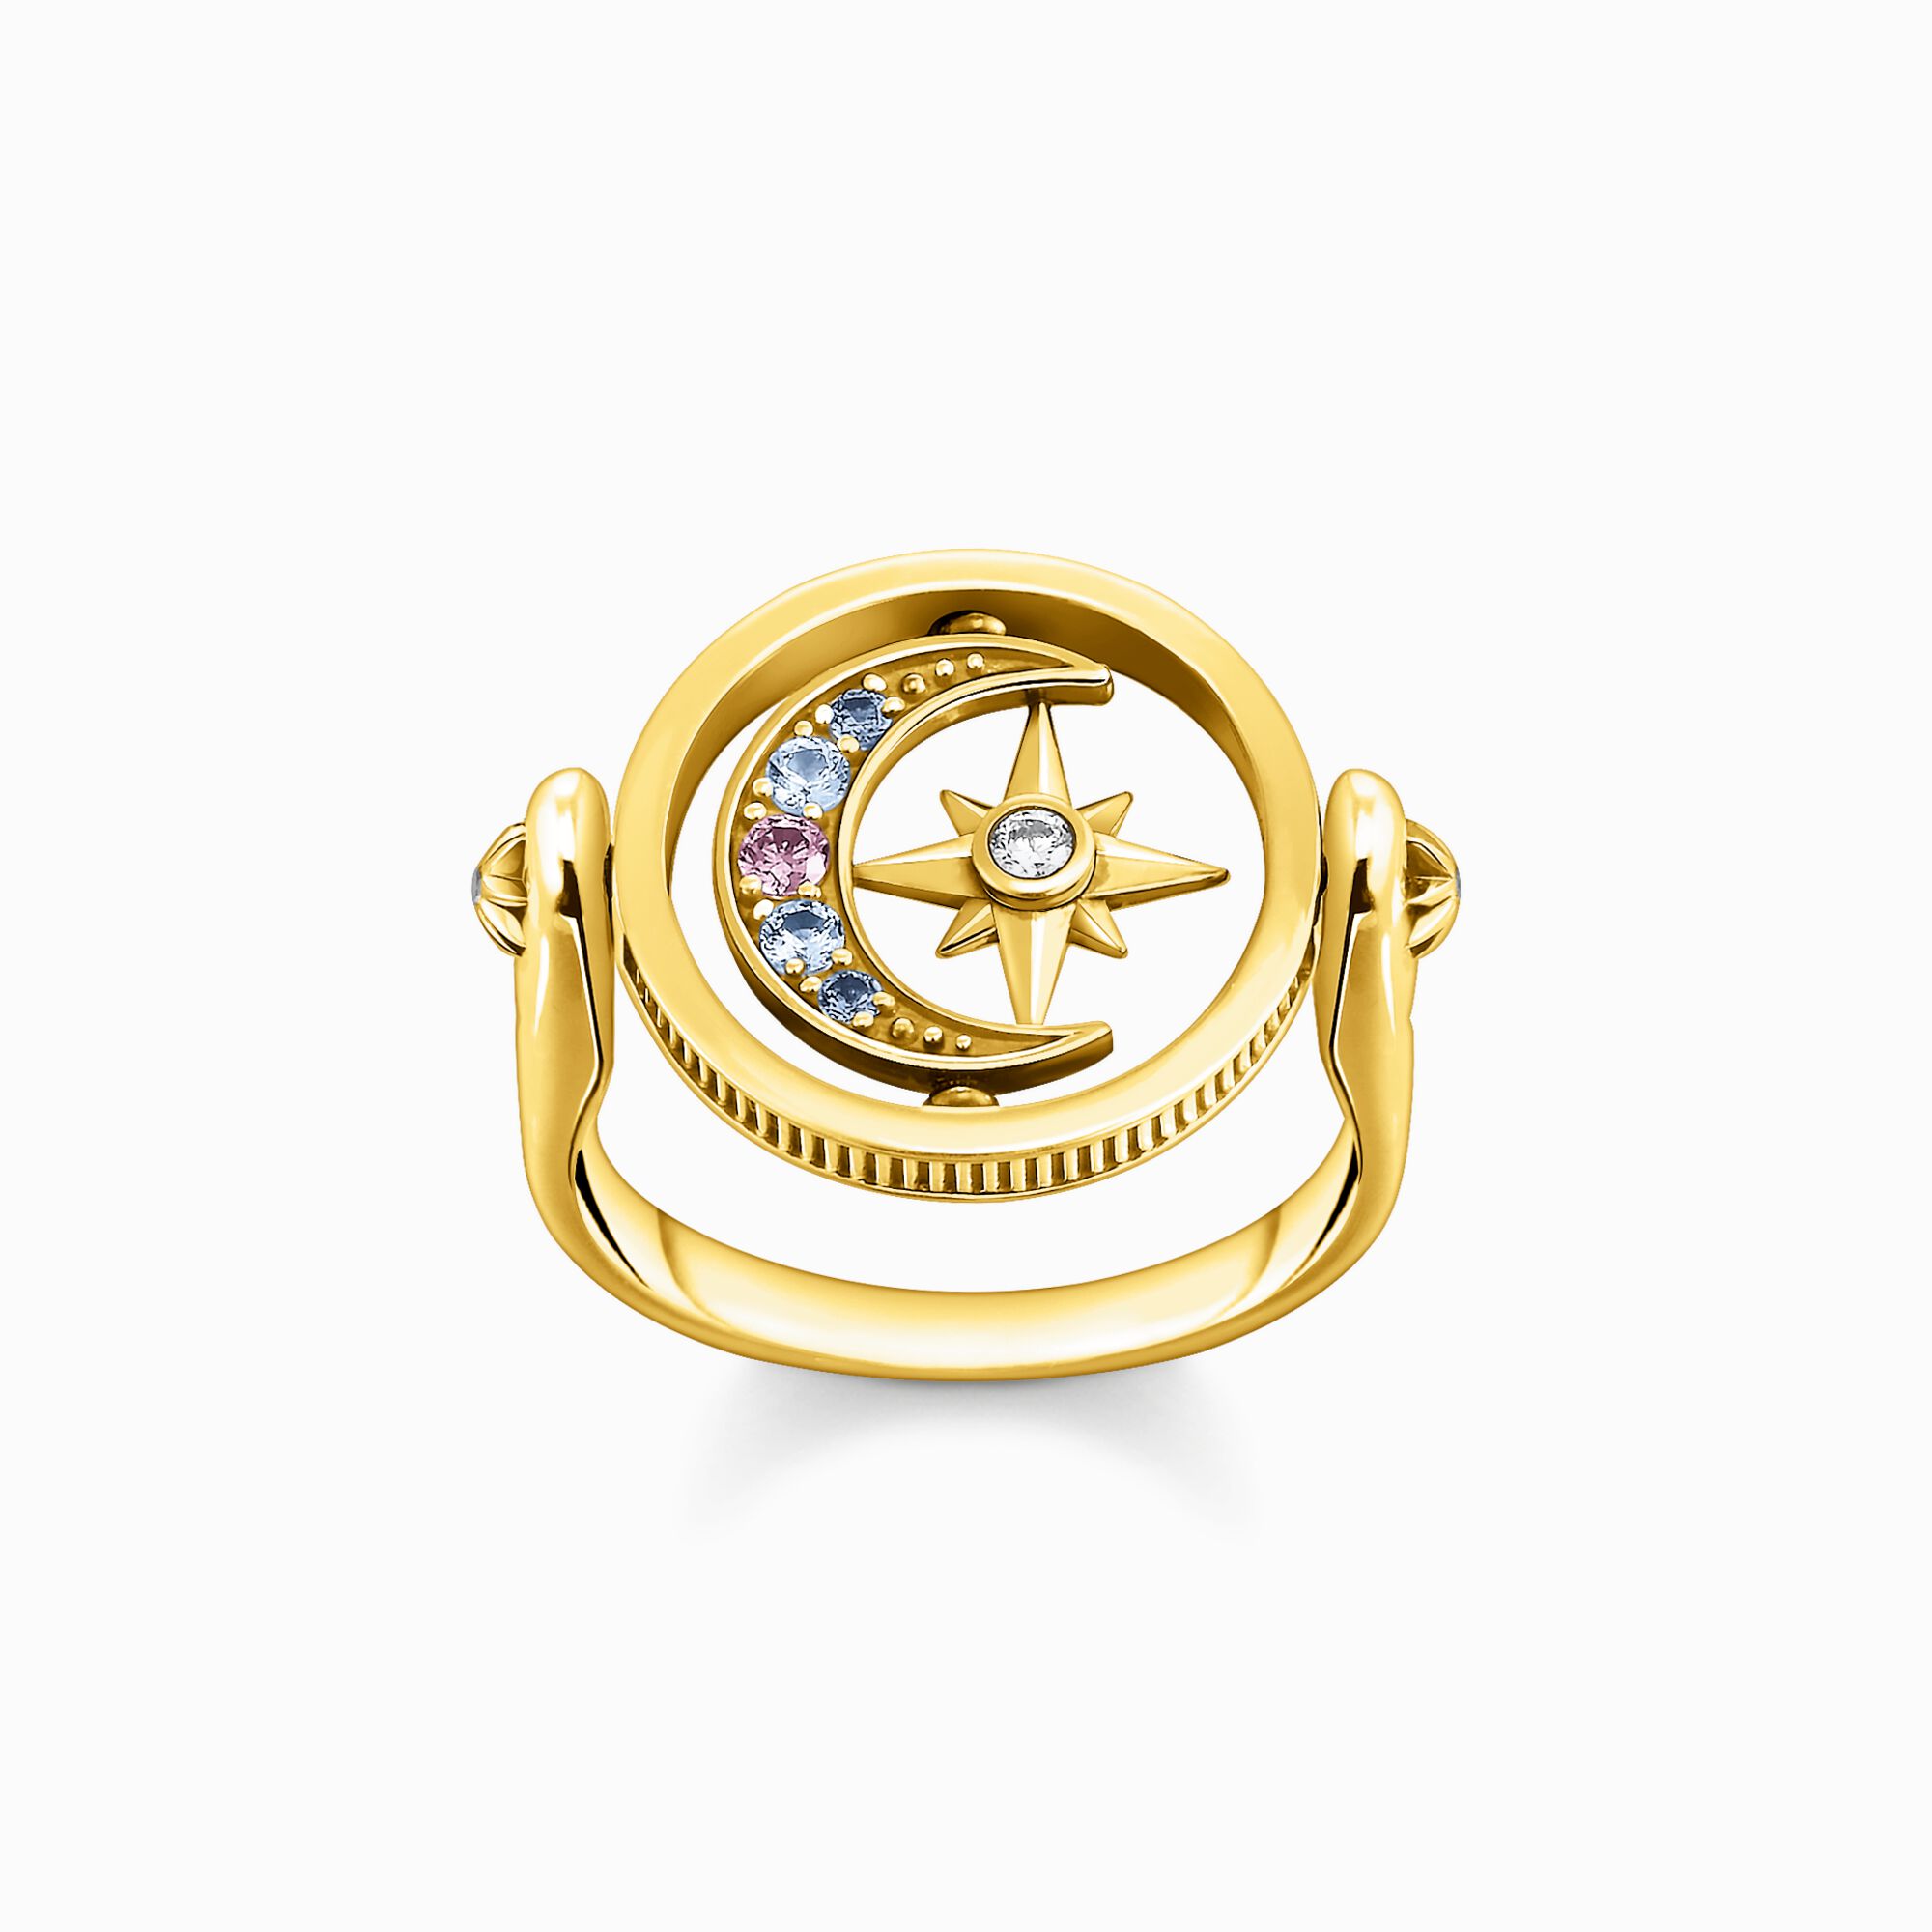 Thomas Sabo + Gold Royalty Star & Moon Ring